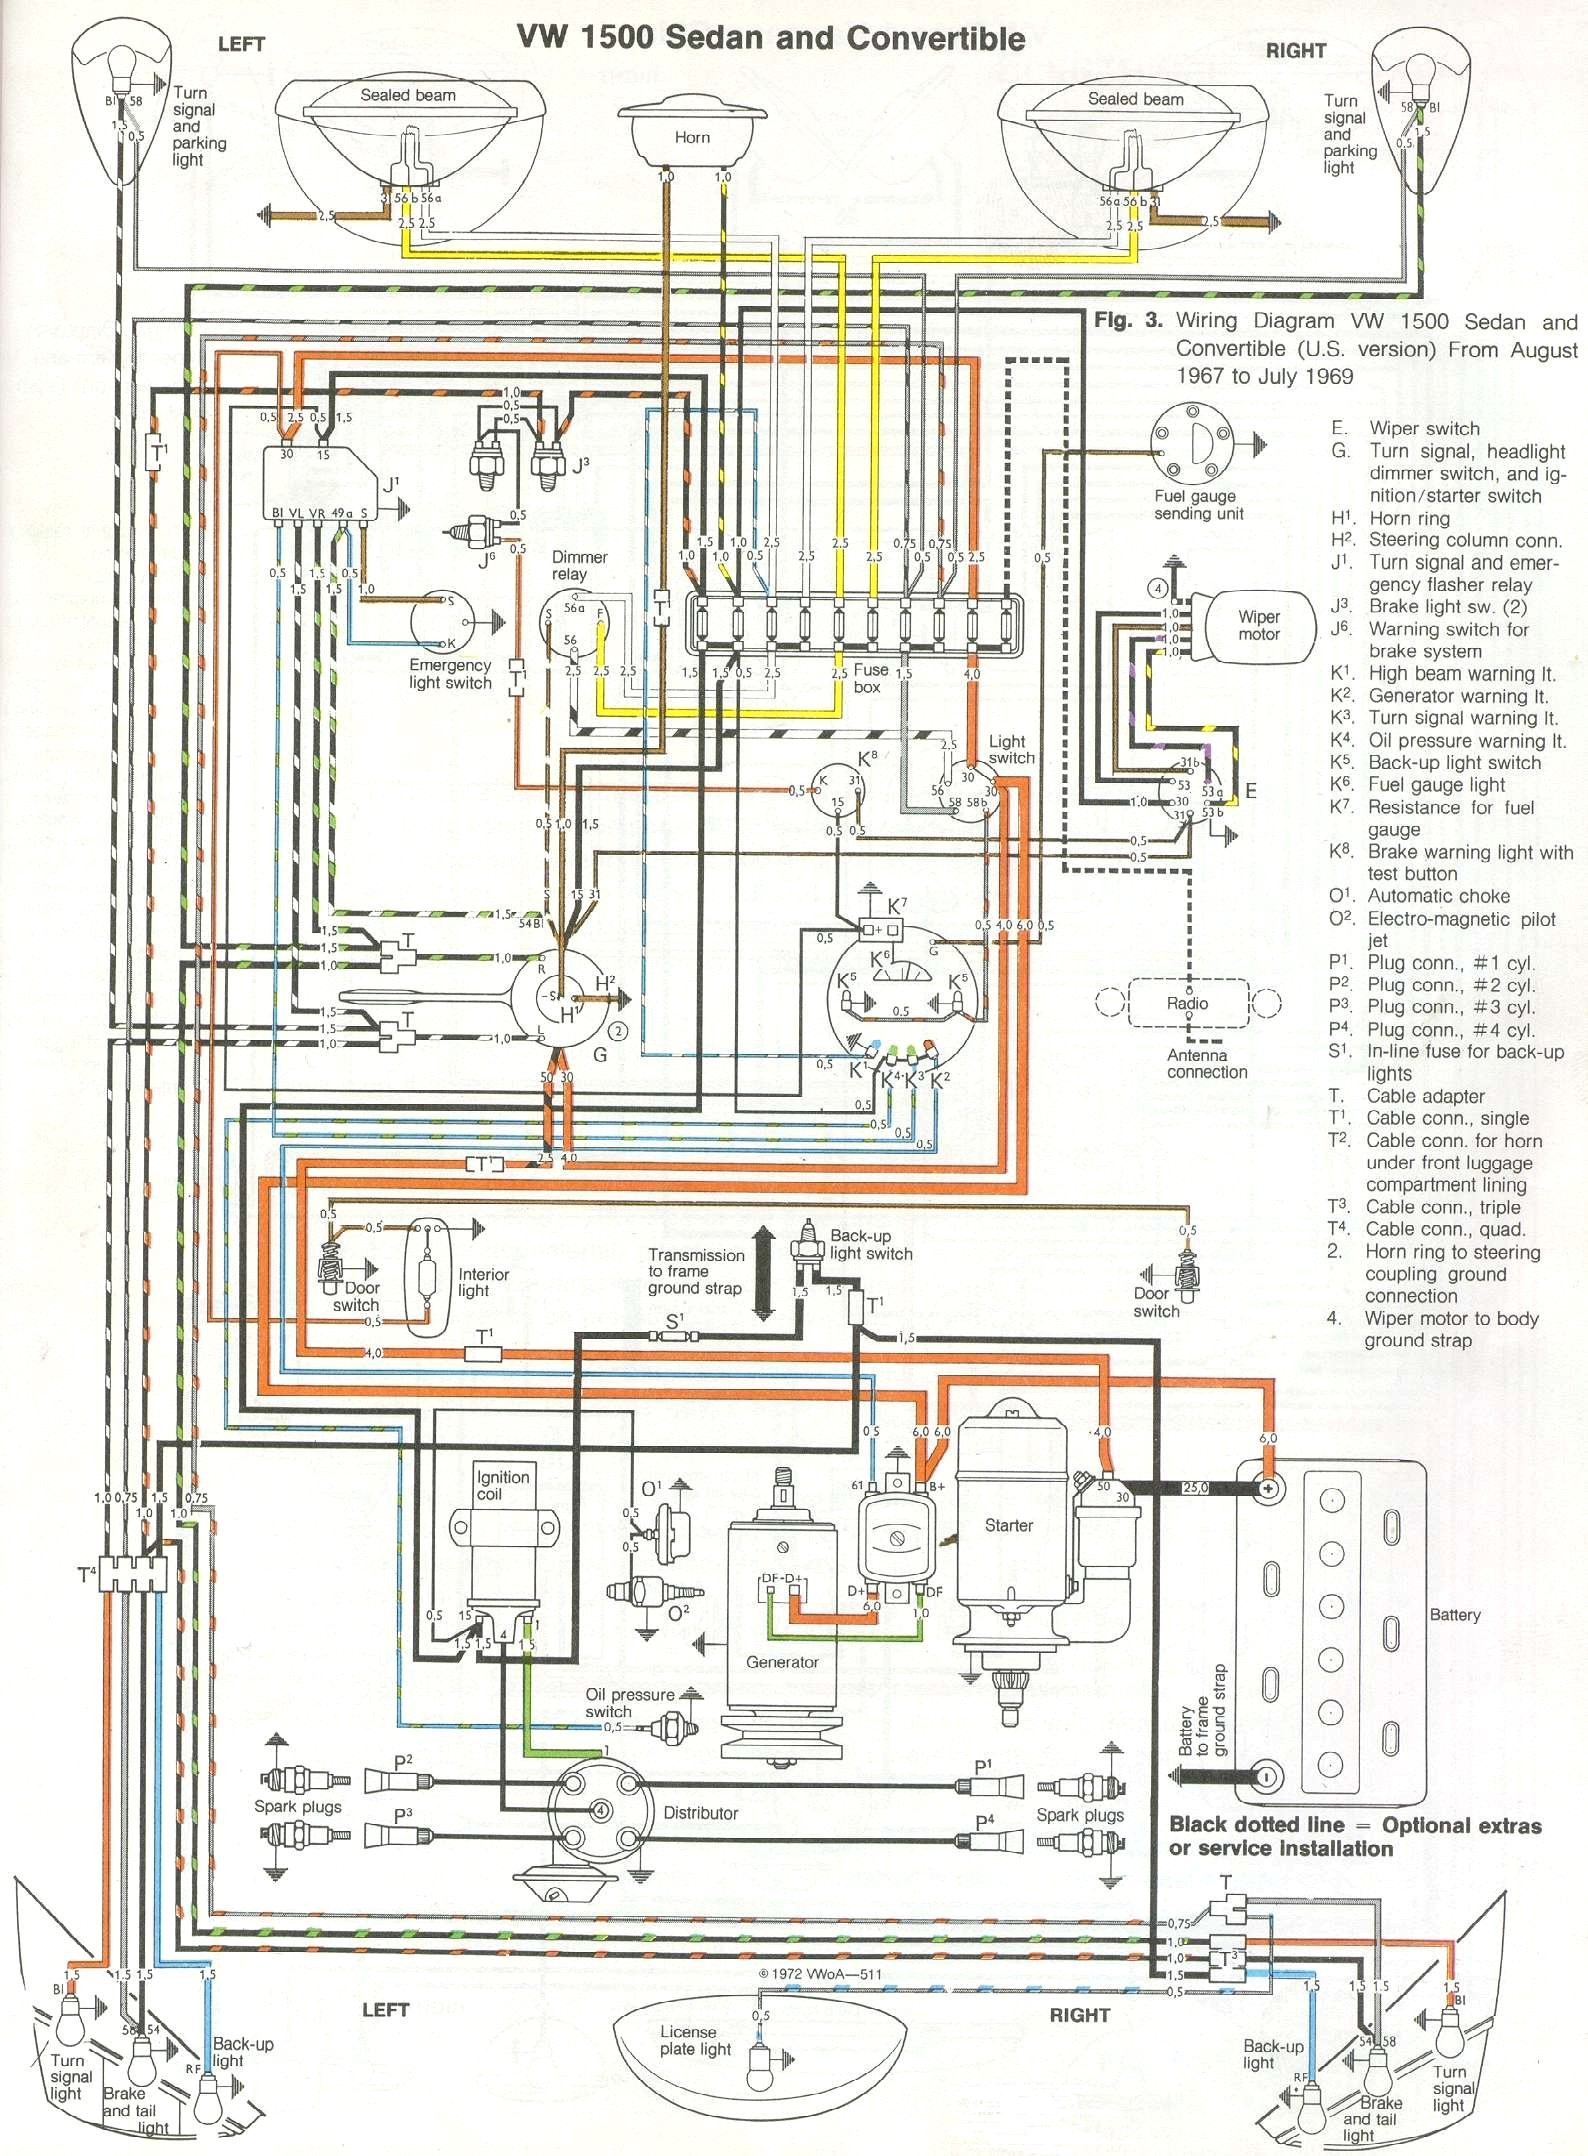 2002 Vw Beetle Engine Diagram 68 Vw Wiring Diagram Wiring Diagram Paper Of 2002 Vw Beetle Engine Diagram